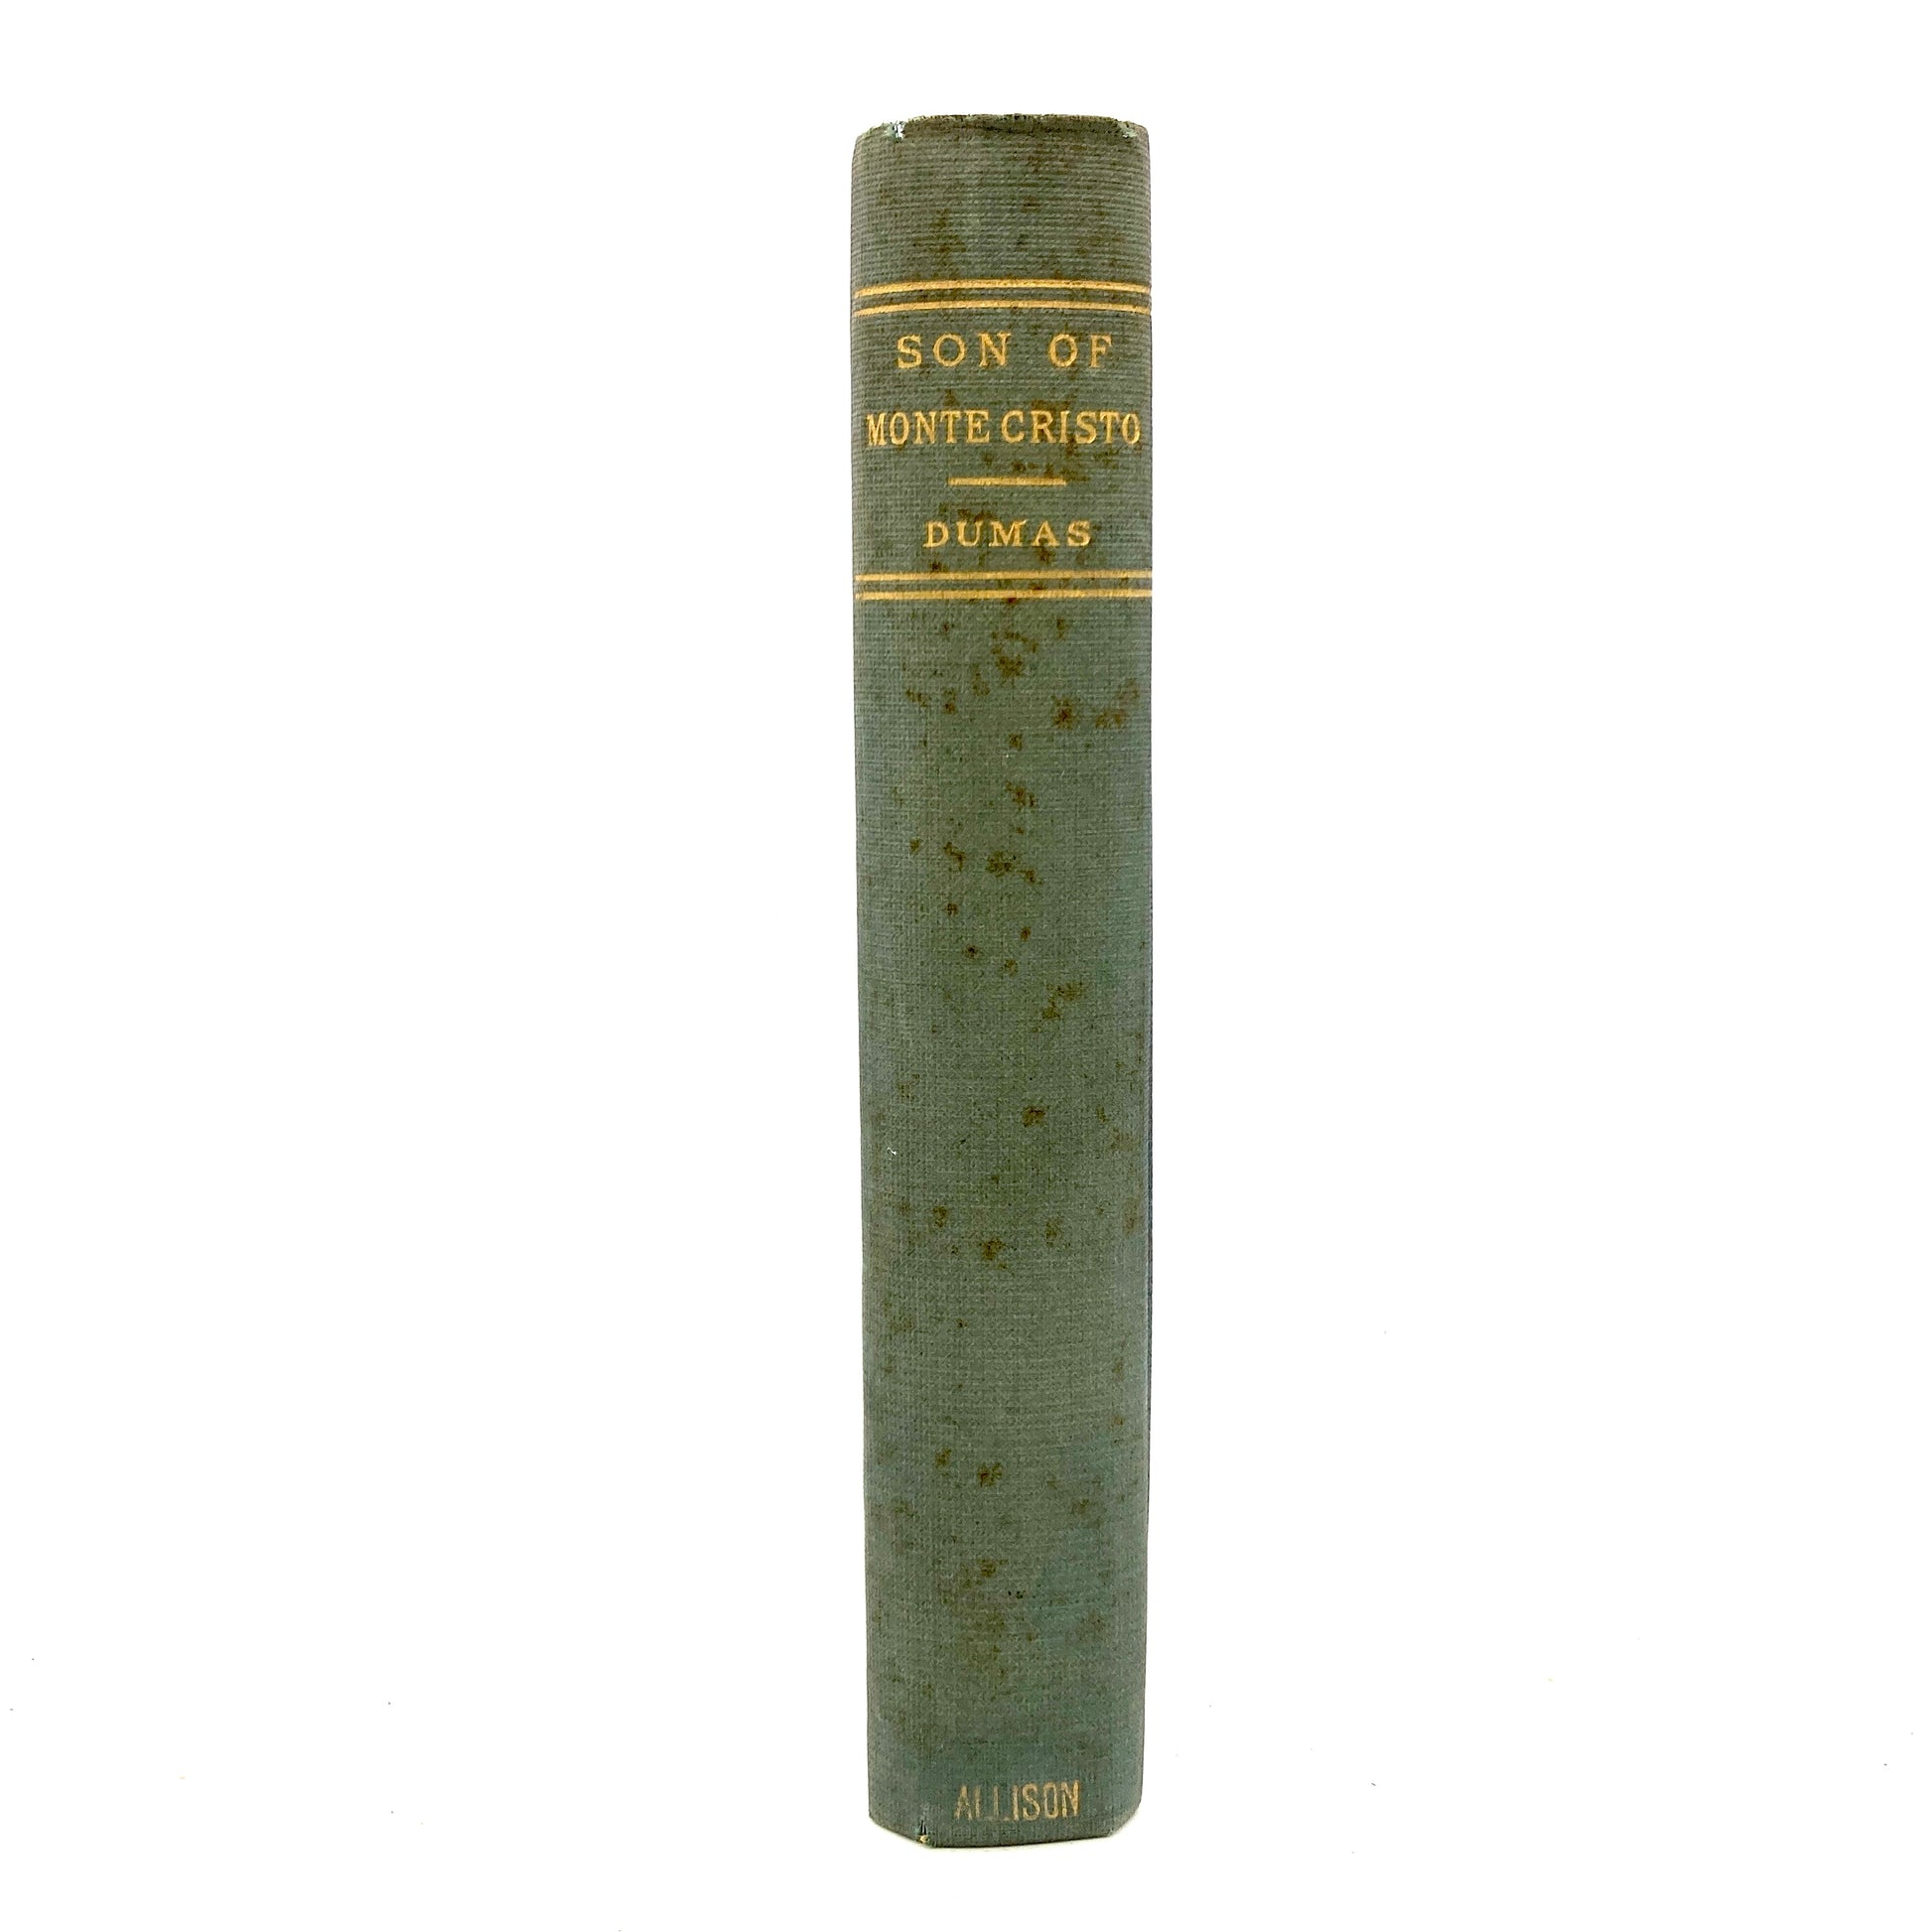 DUMAS, Alexandre "The Son of Monte Cristo" [Wm. L. Allison, 1884] - Buzz Bookstore